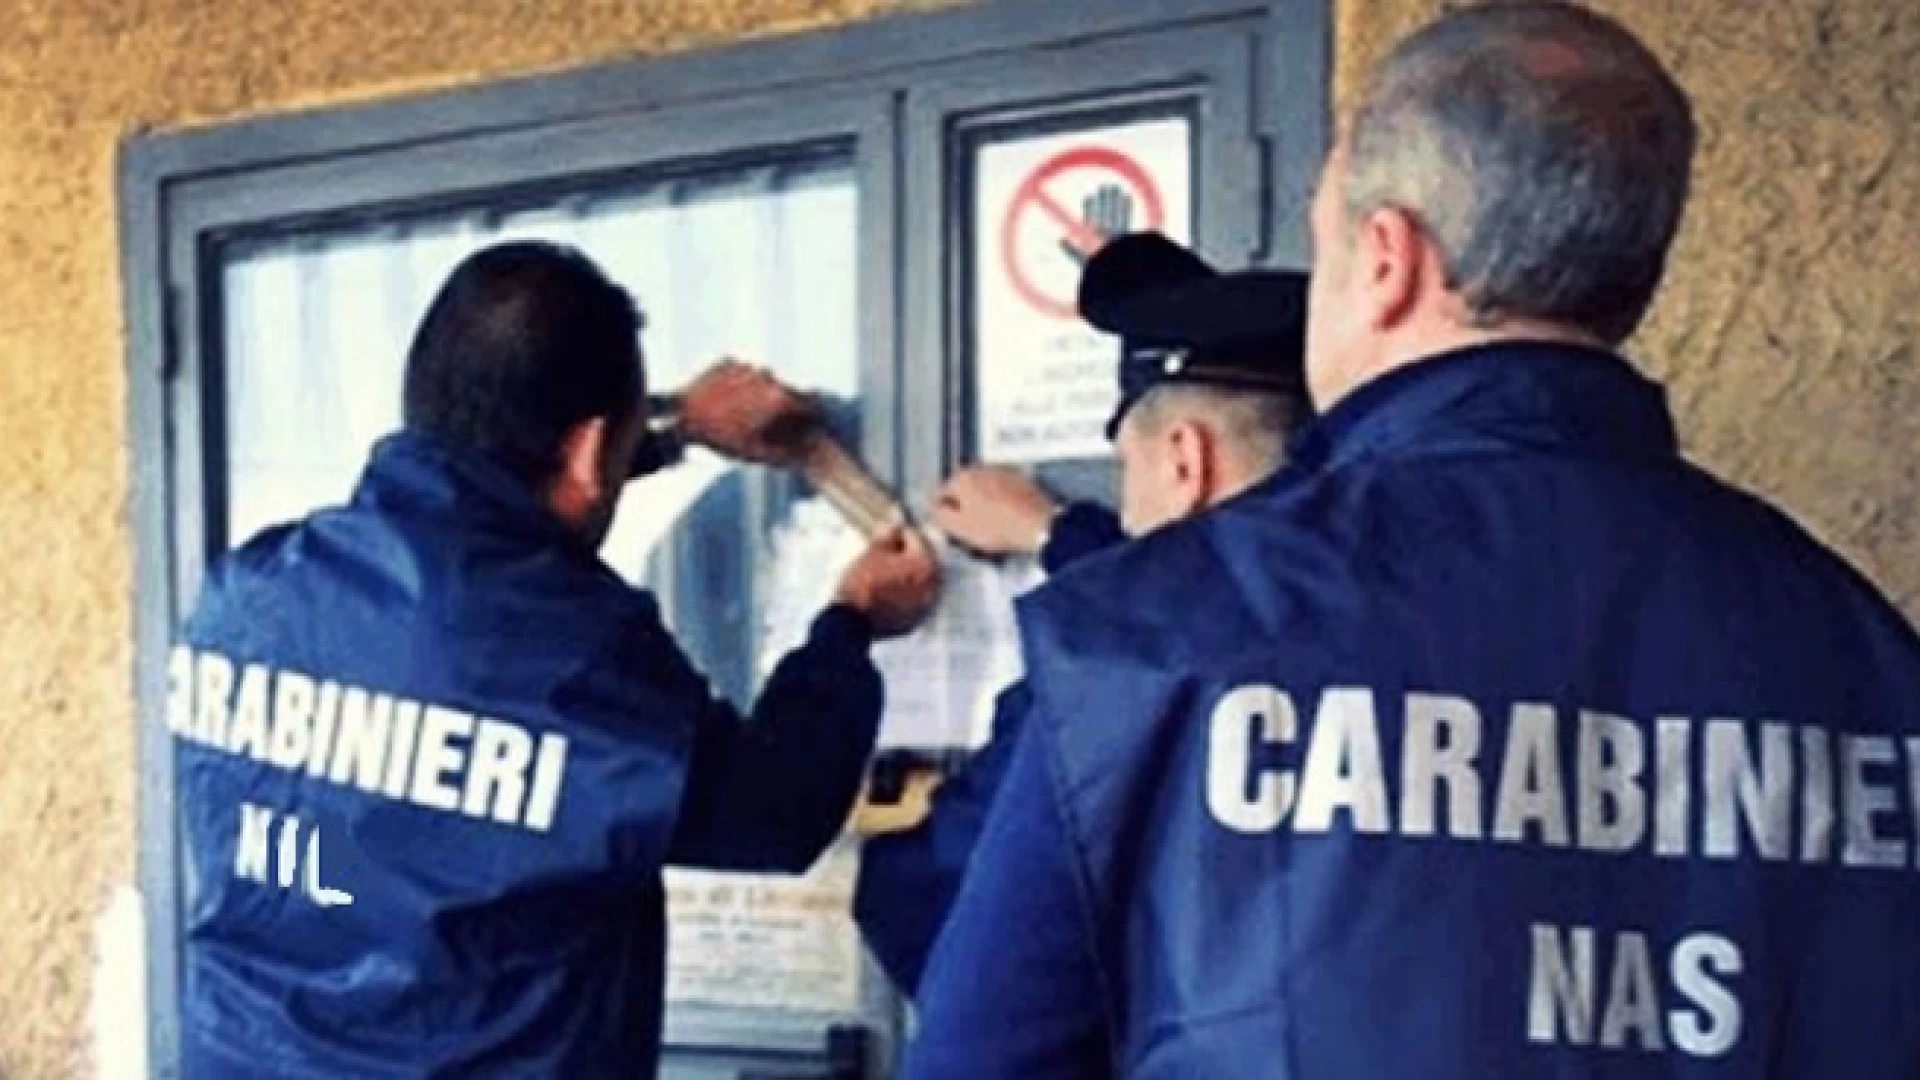 Isernia: Controlli dei Carabinieri presso le case di riposo per anziani ed altre attività imprenditoriali, tre persone denunciate all’Autorità Giudiziaria.